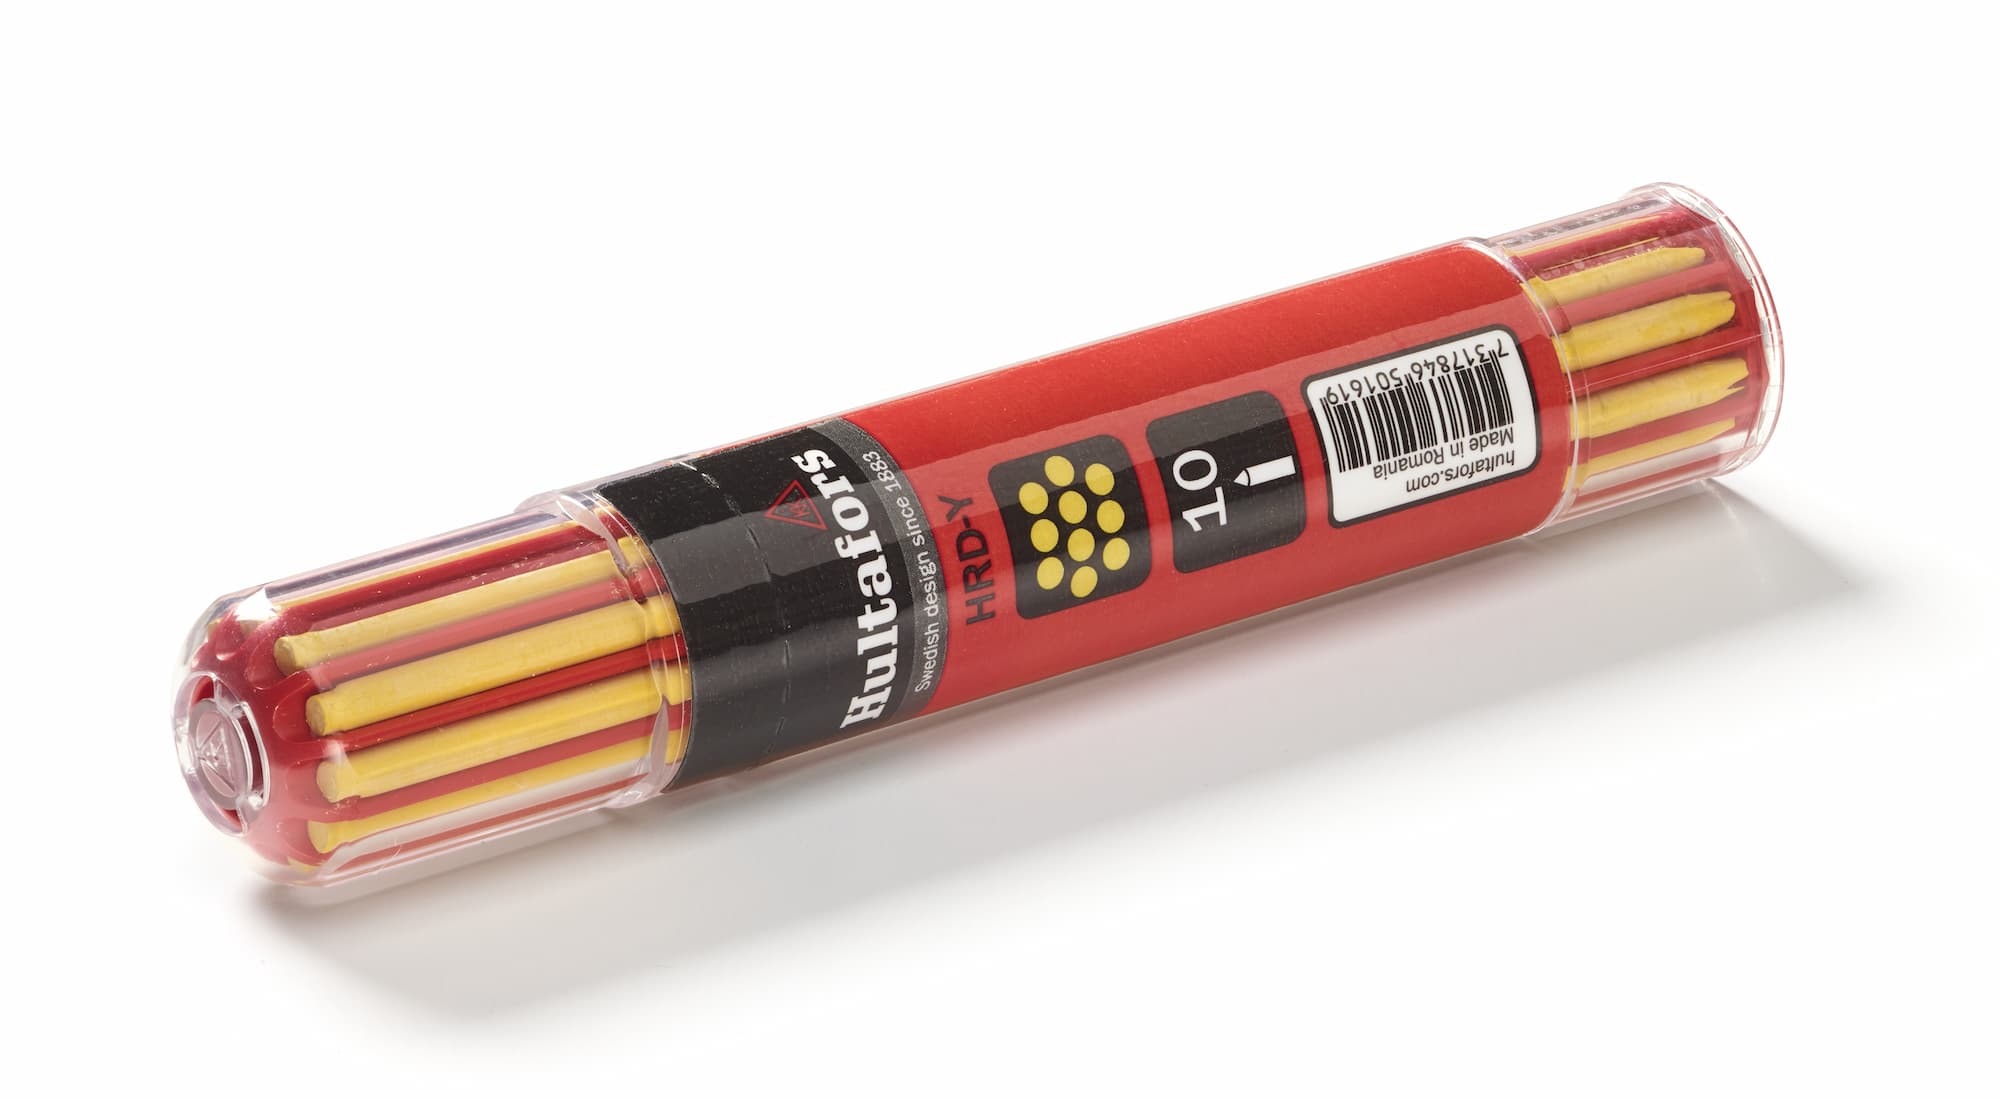 Hultafors Dry Marker Pencil Refills